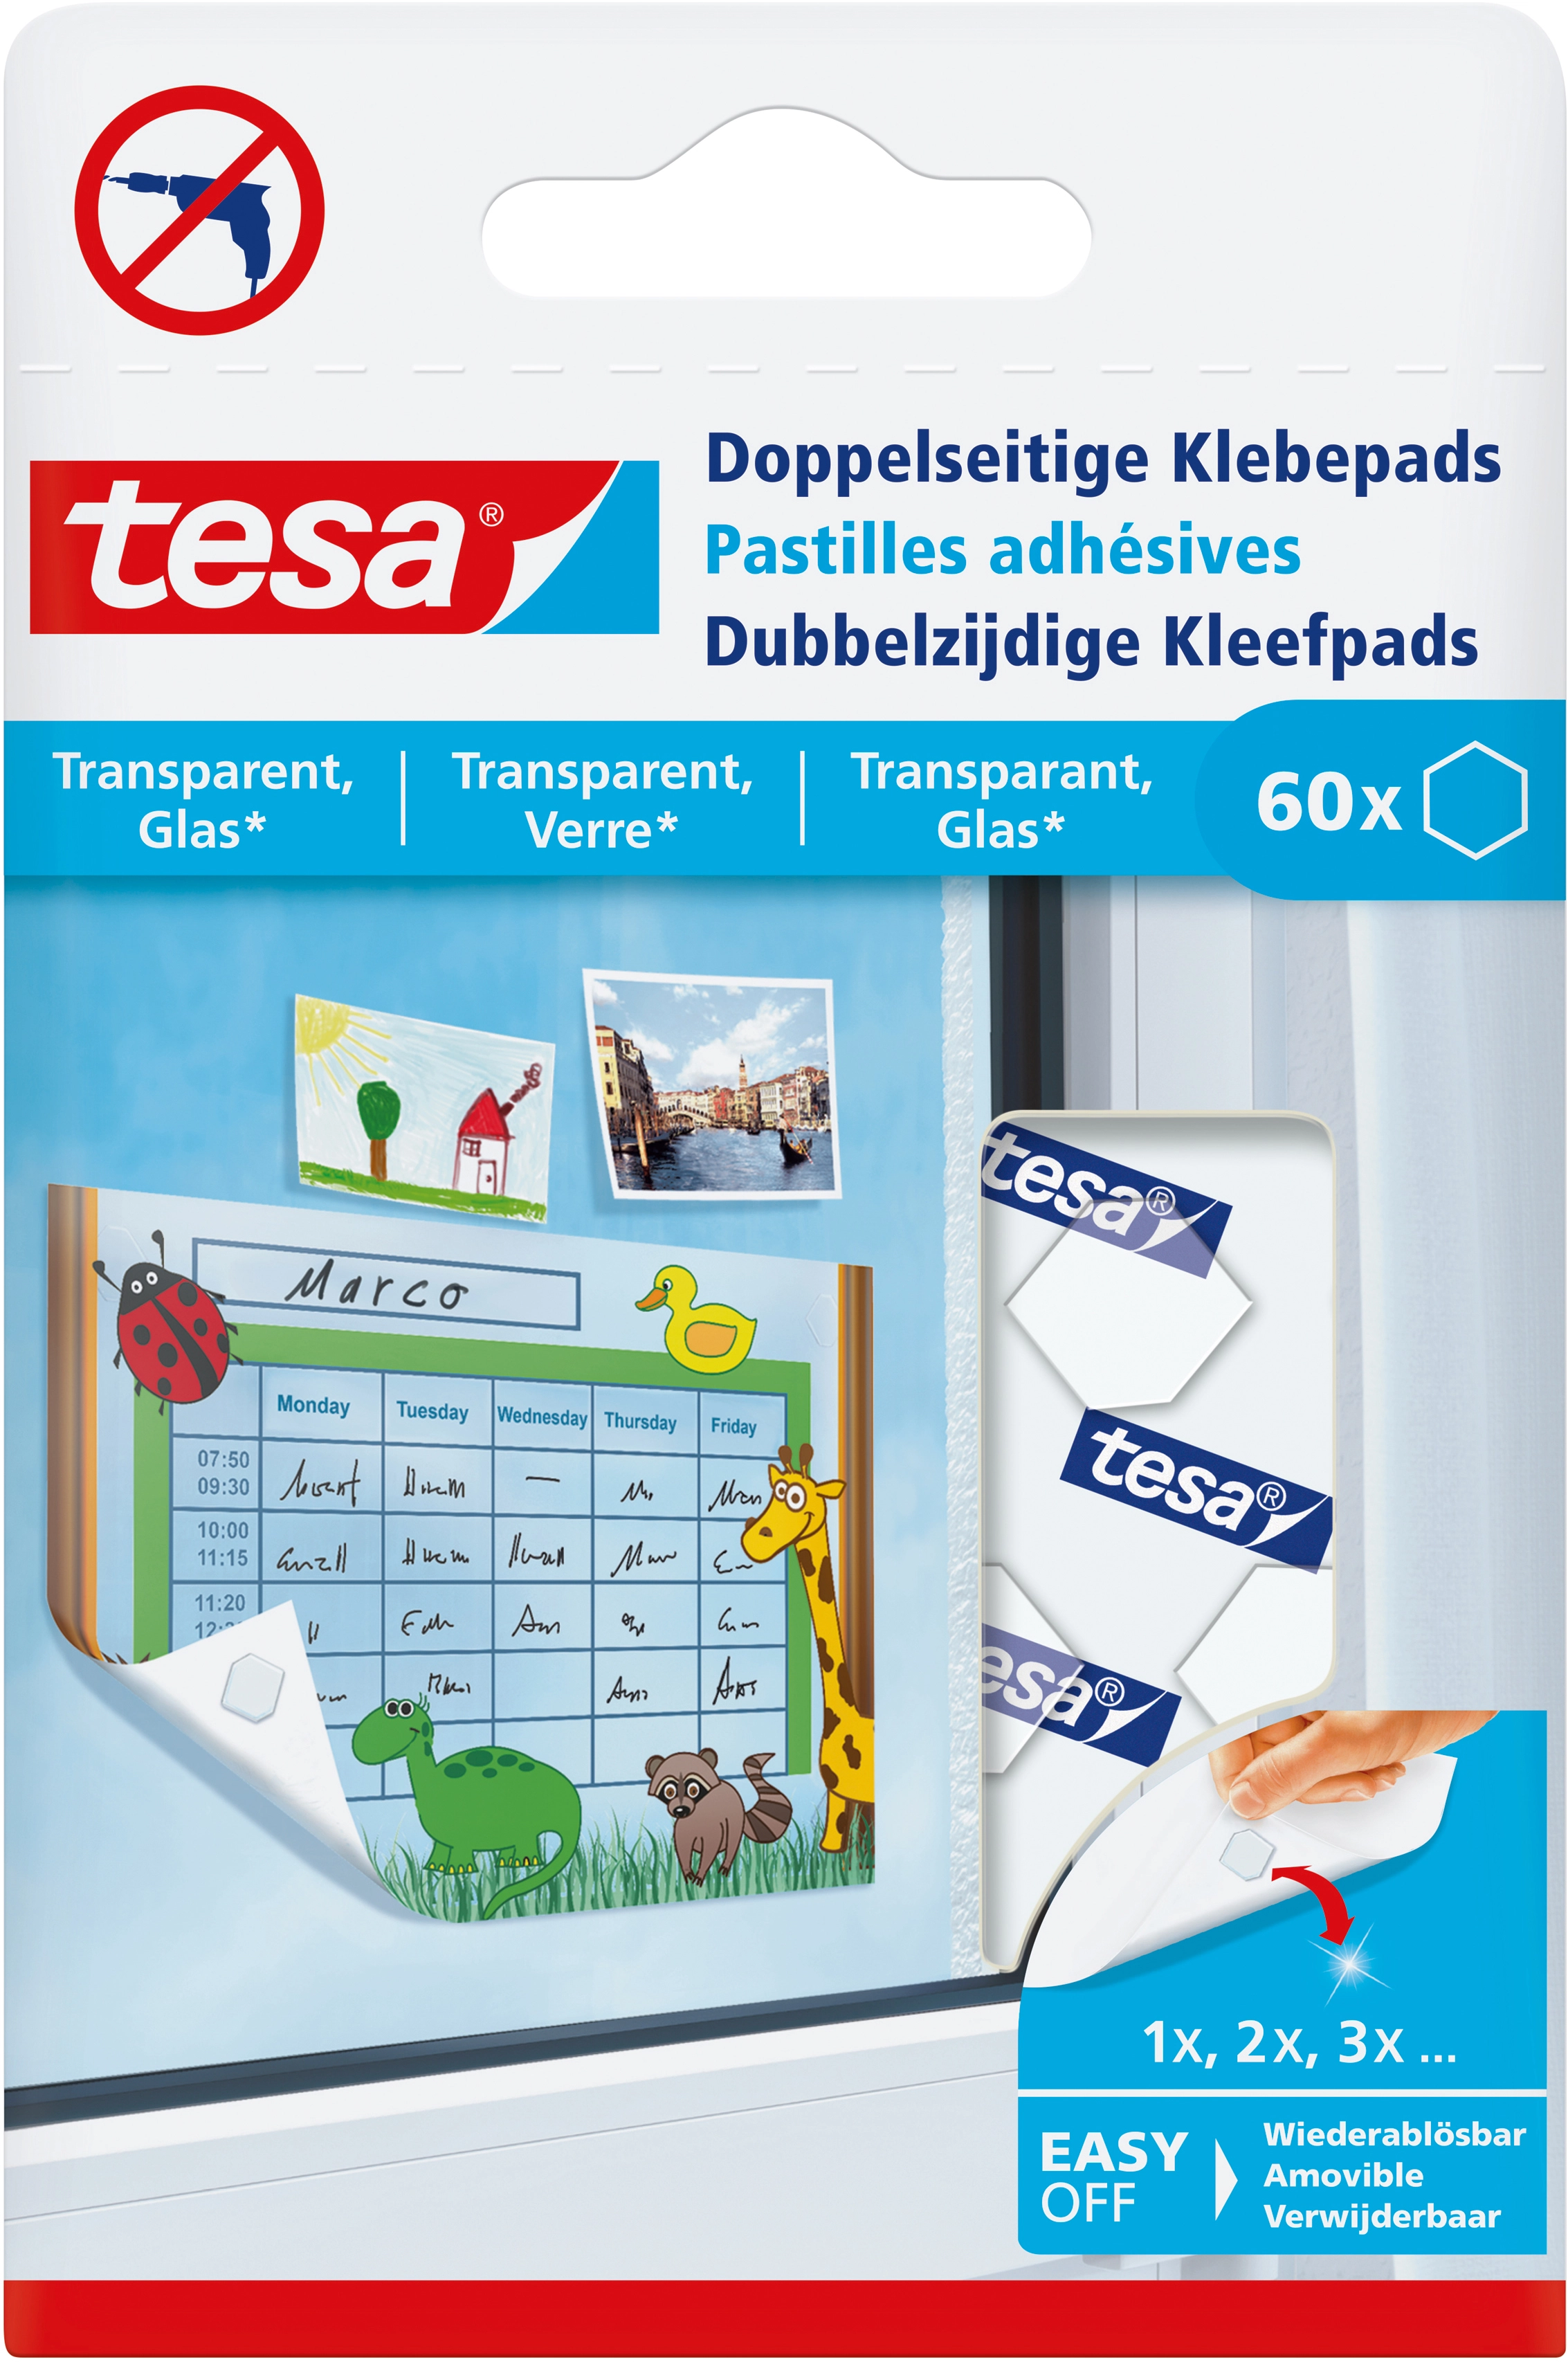 Tesa® Doppelseitige Klebepads für transparente Oberflächen und